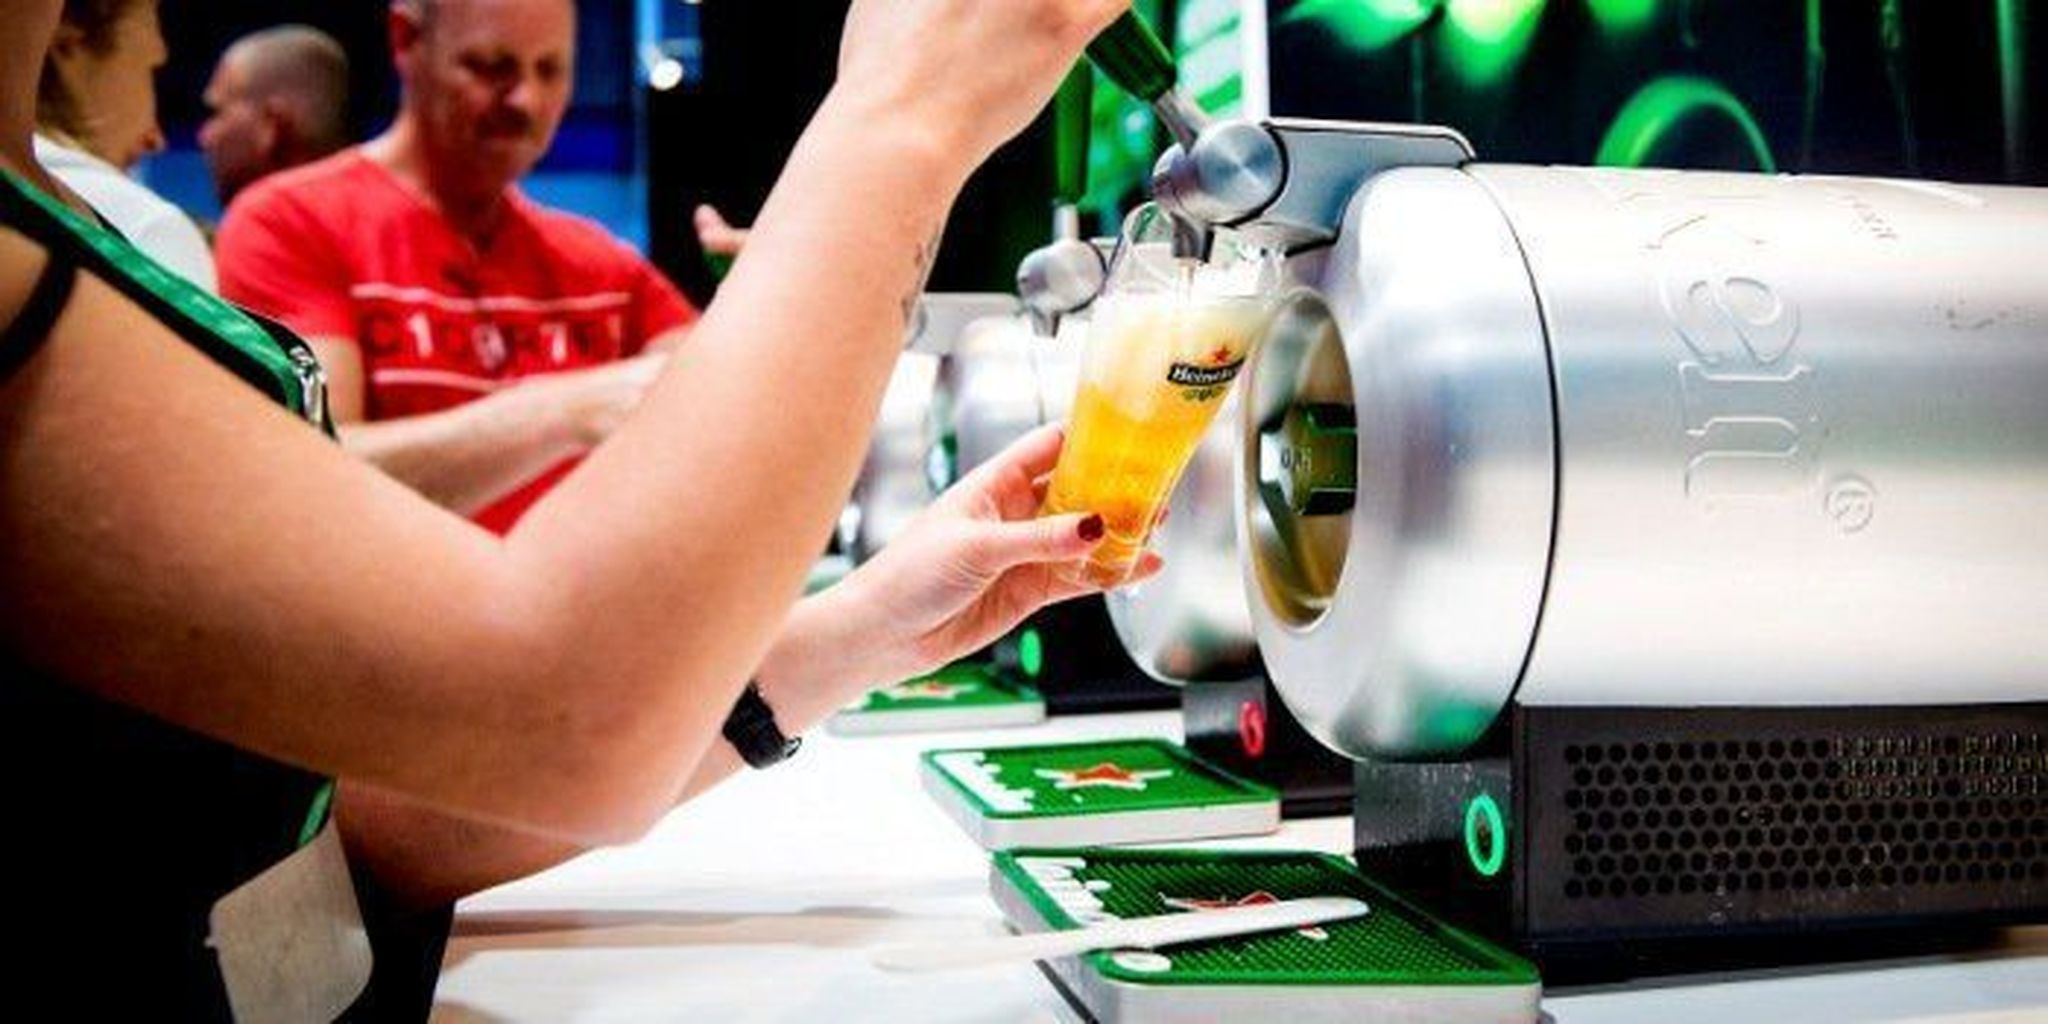 Analistenverwachting: stijgende prijzen jagen omzet Heineken aan